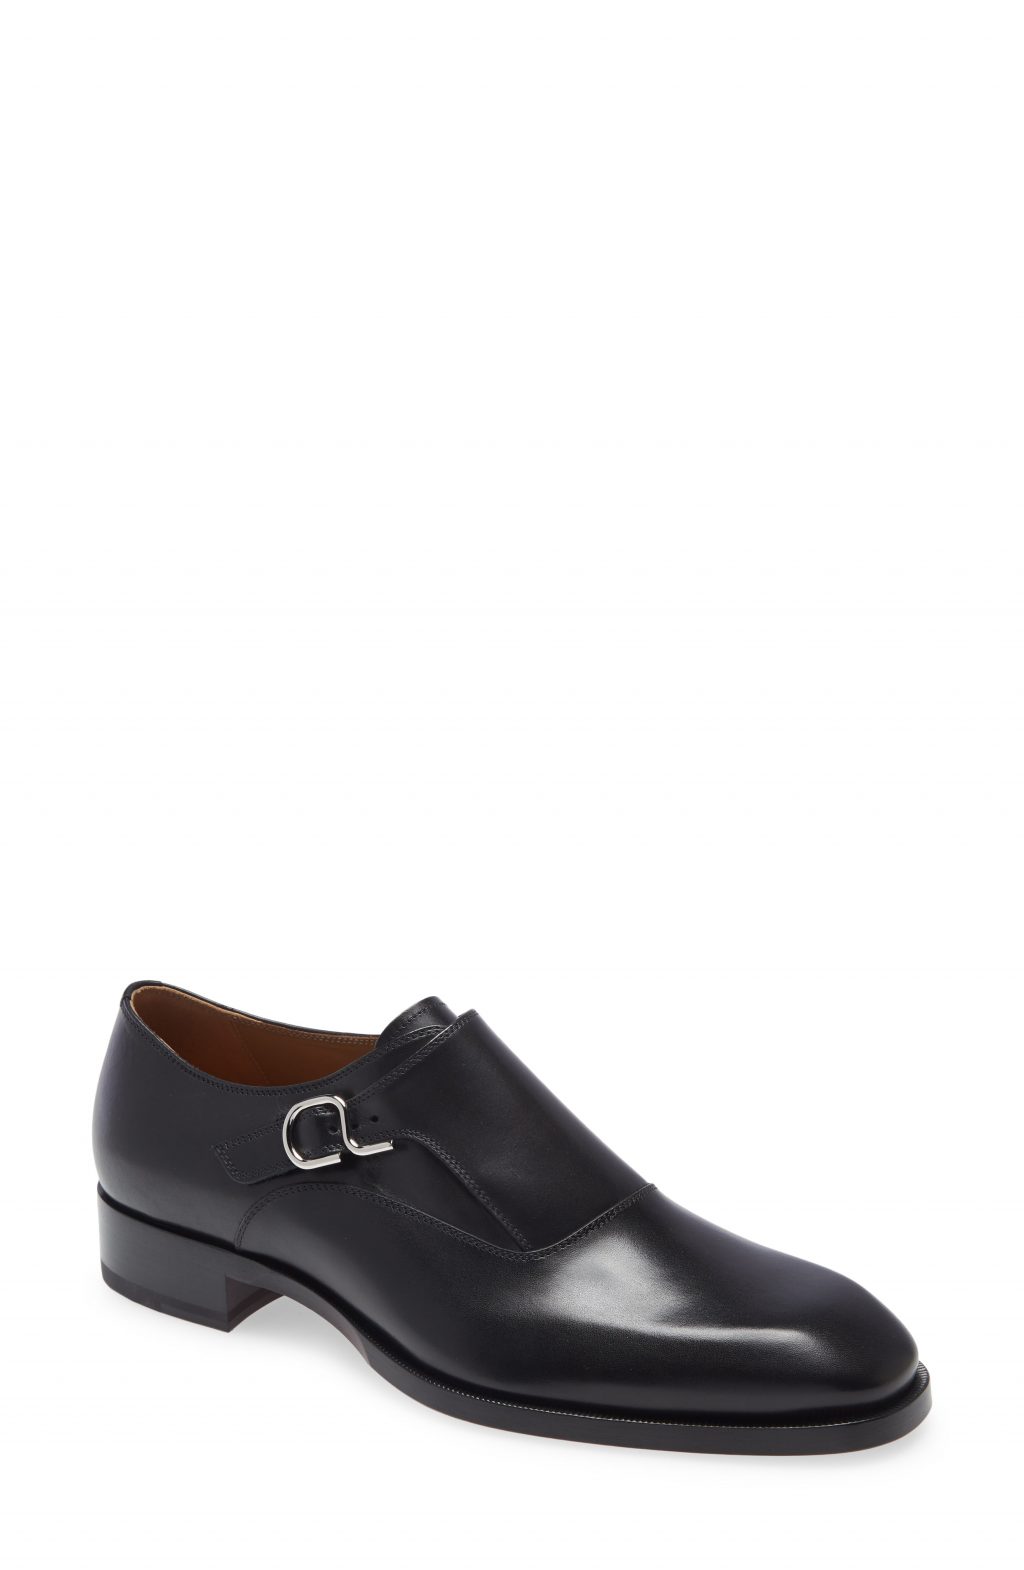 Men’s Christian Louboutin John Monk Strap Shoe, Size 7US - Black ...